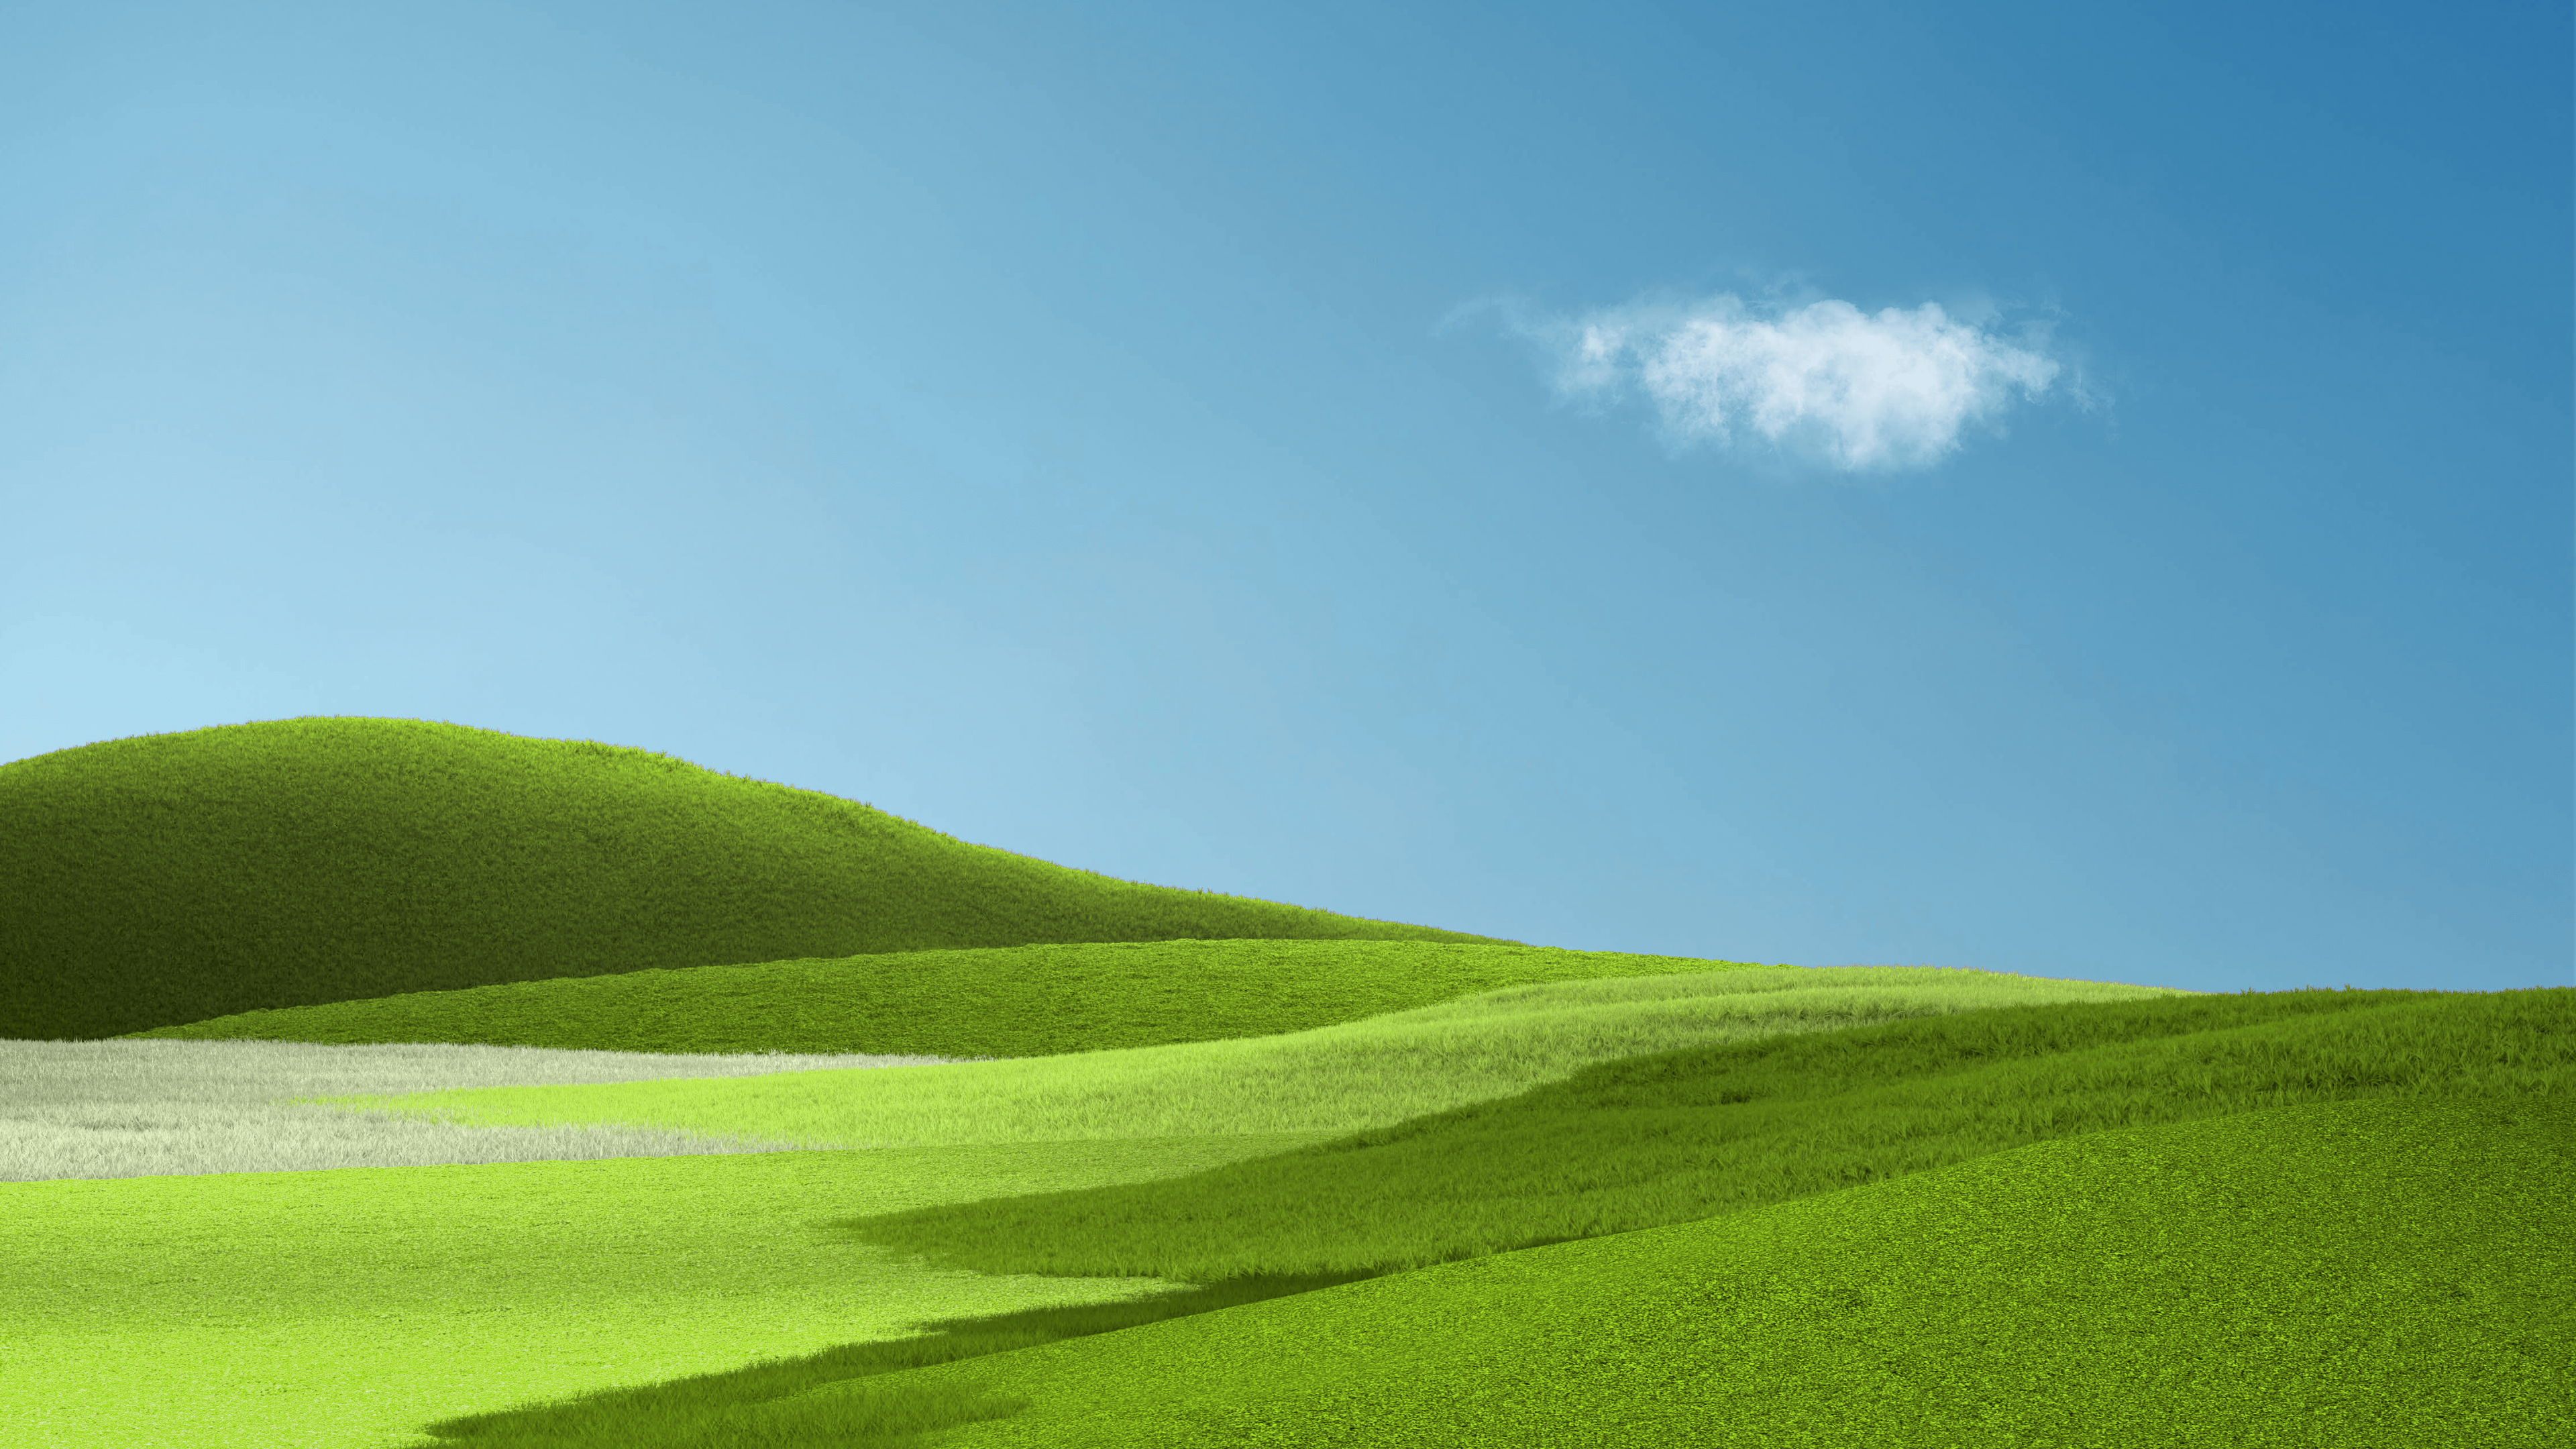 Aesthetic Wallpaper 4K, Landscape, Grass field, Green Grass, Clear sky, Nature